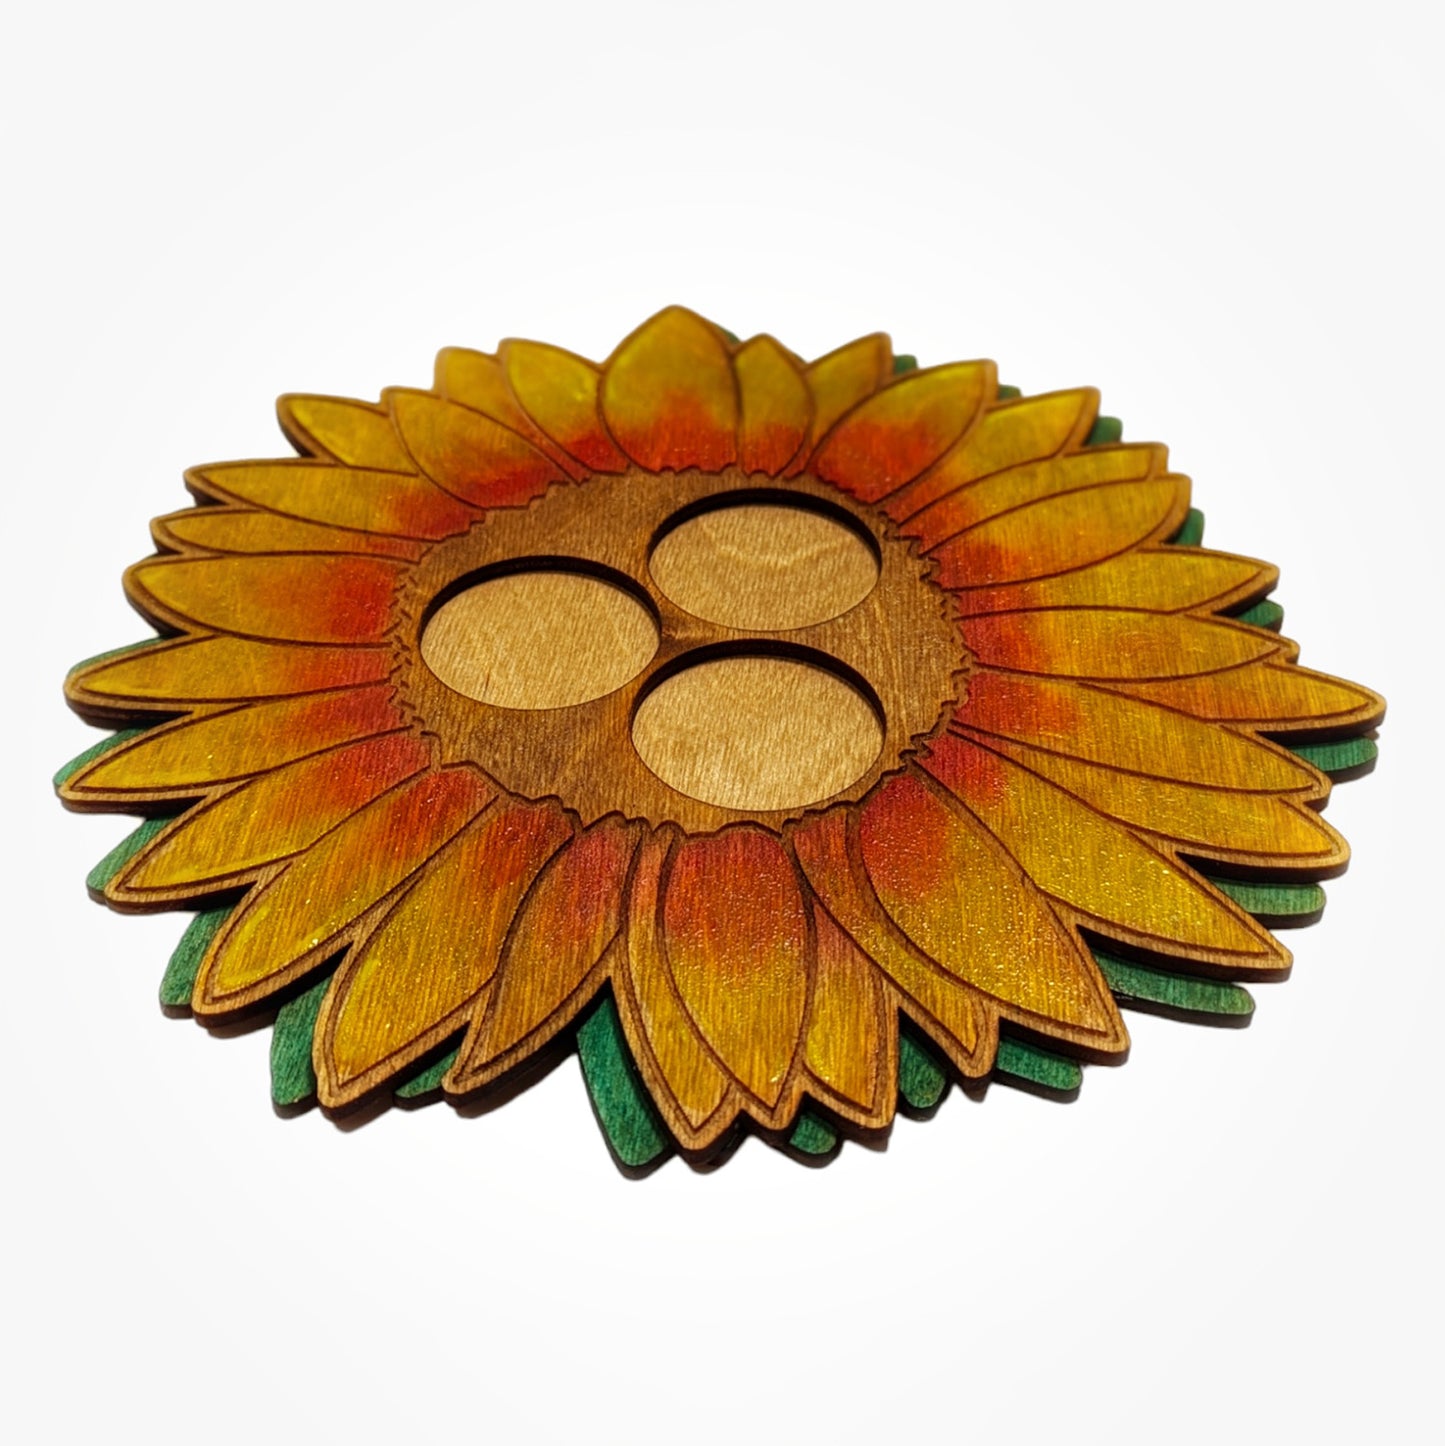 Sunflower Candleholder Tea Light Holder - Summer or Fall Candle Home Décor